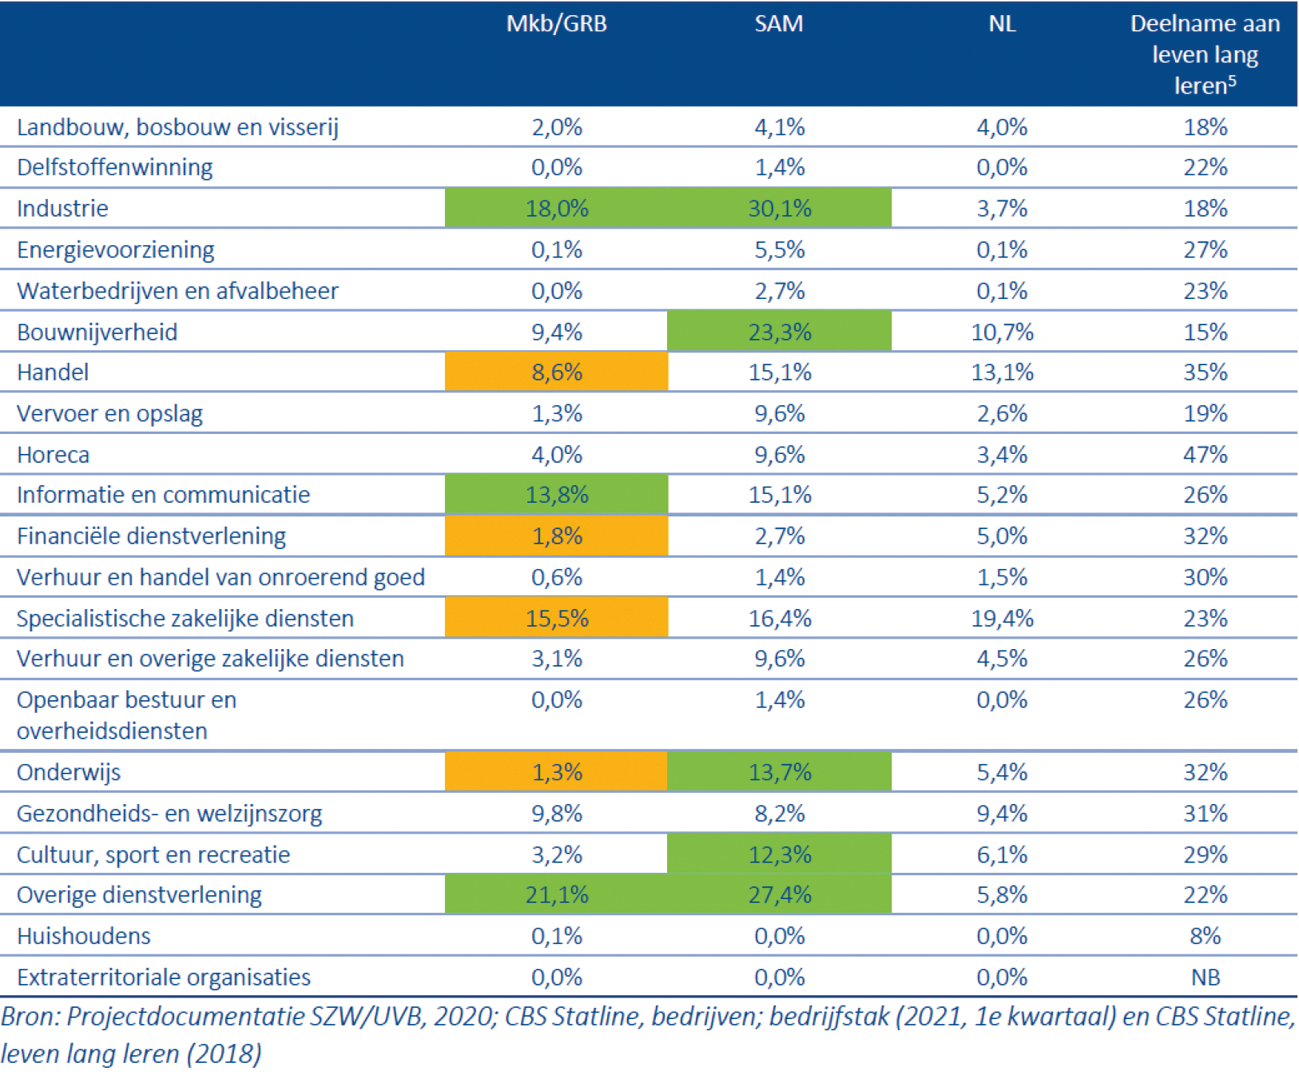 Overzicht SLIM-regeling: bereik naar sector (verdeling van totaal aantal bedrijven naar sector)1